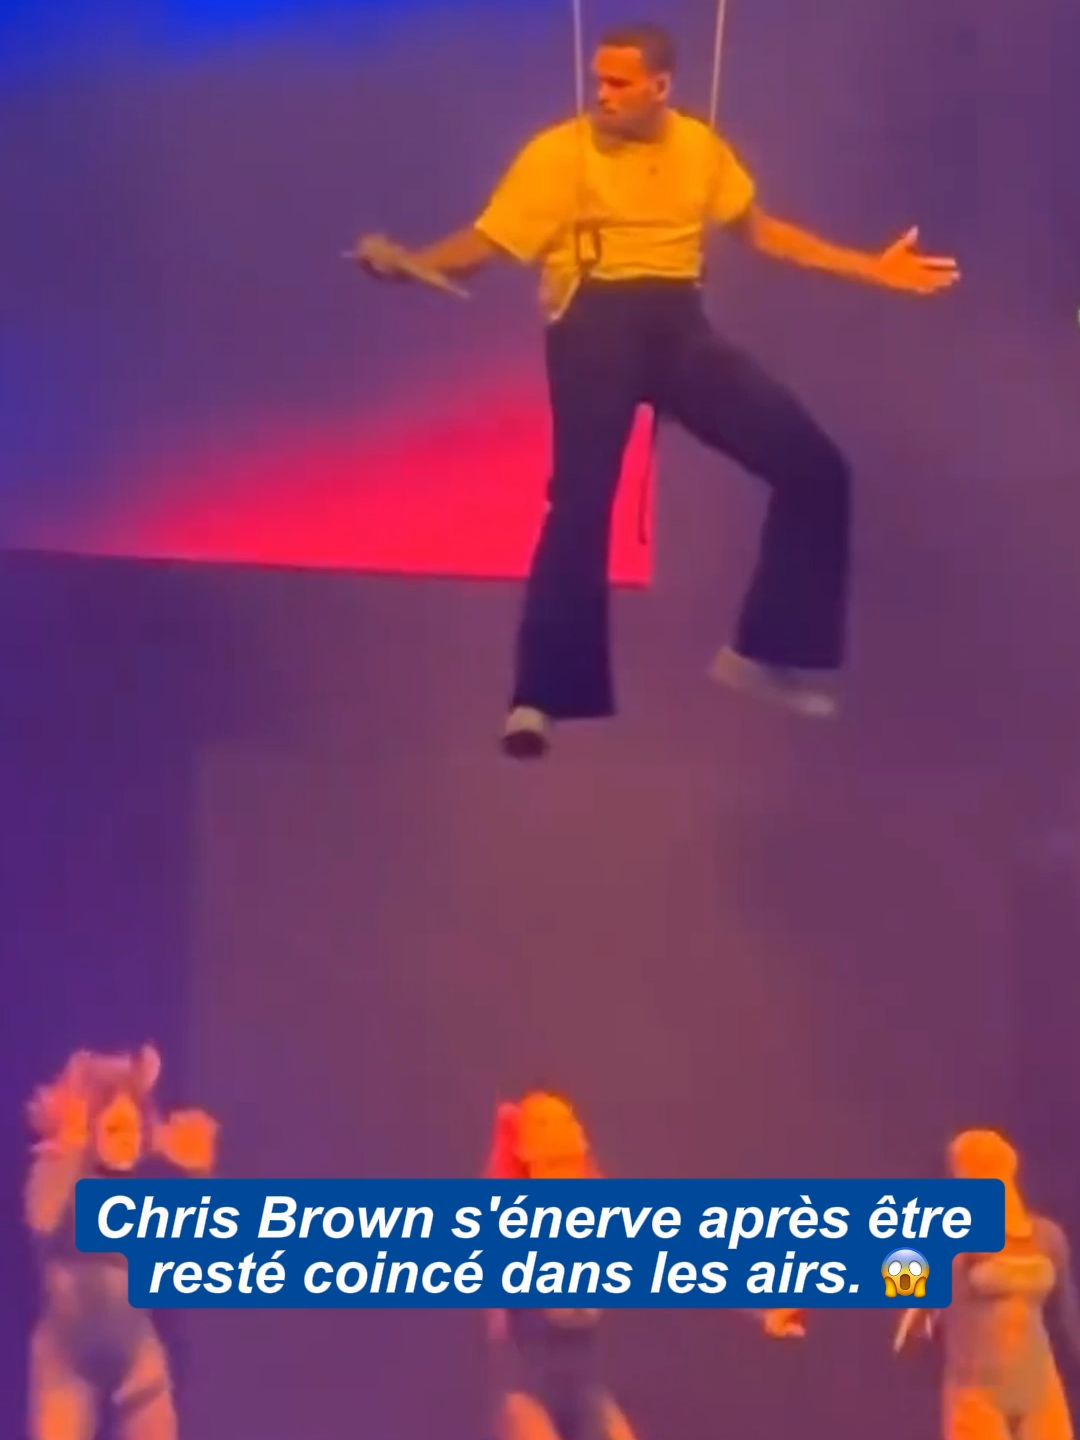 Chris Brown s'énerve contre la sécurité après être resté bloquer dans les airs 😂😂 #breezy #kimk #chrisbrown #funnyvideo #concert